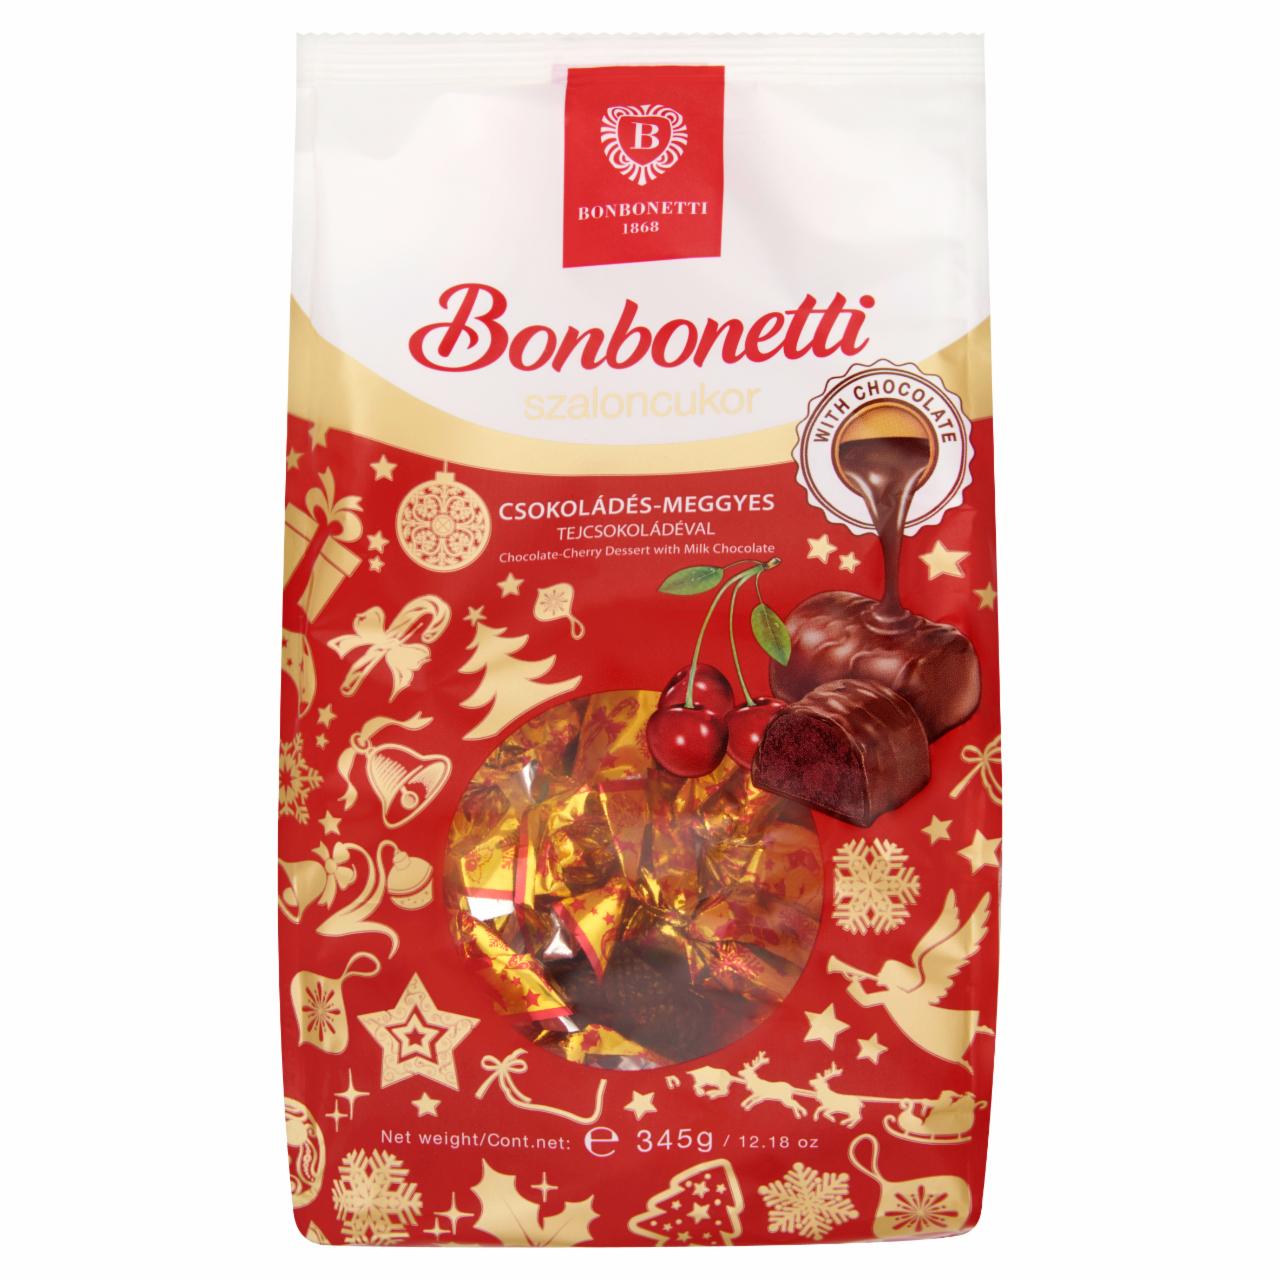 Képek - Bonbonetti csokoládés-meggyes szaloncukor tejcsokoládéval 345 g